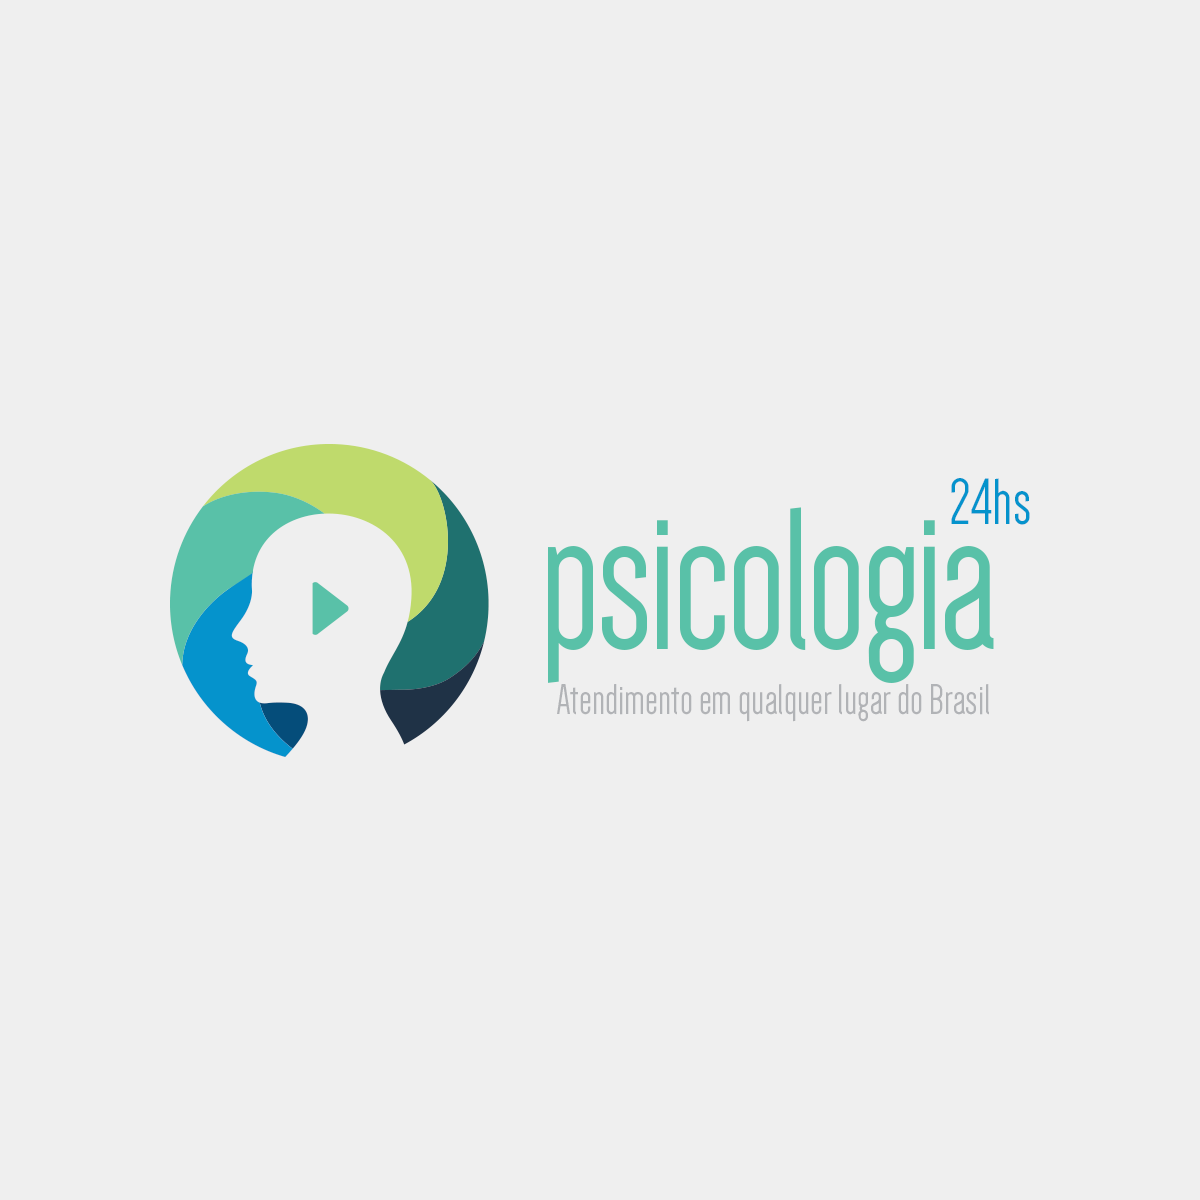 https://www.brasiltelemedicina.com.br/wp-content/uploads/2016/07/psicologia-24hs-1200x1200.png